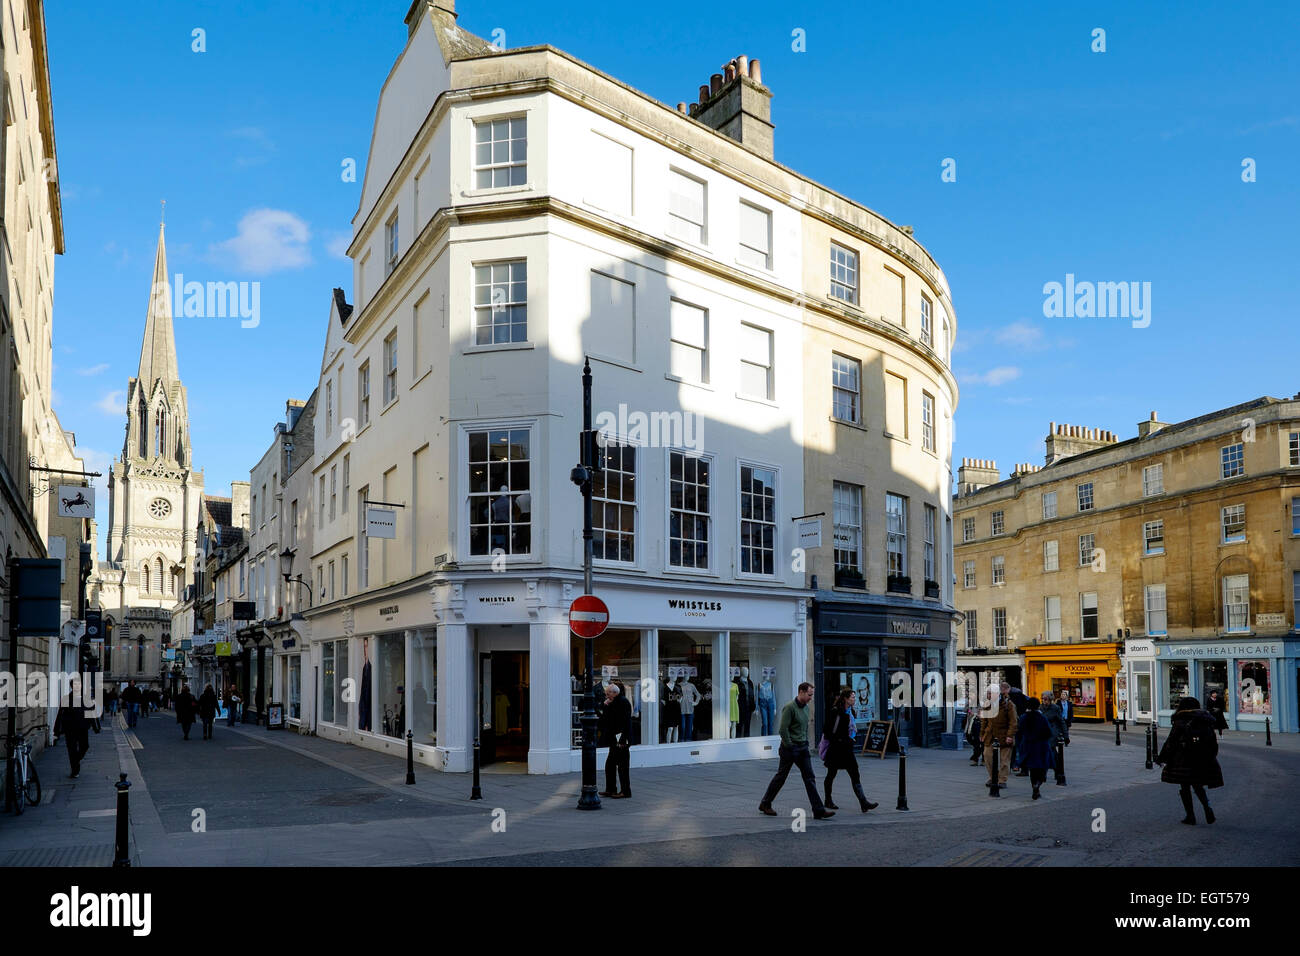 Bath, England, UK - 18. Februar 2015: Einkaufsstraßen in Bad - Wood Street und Green Street Stockfoto